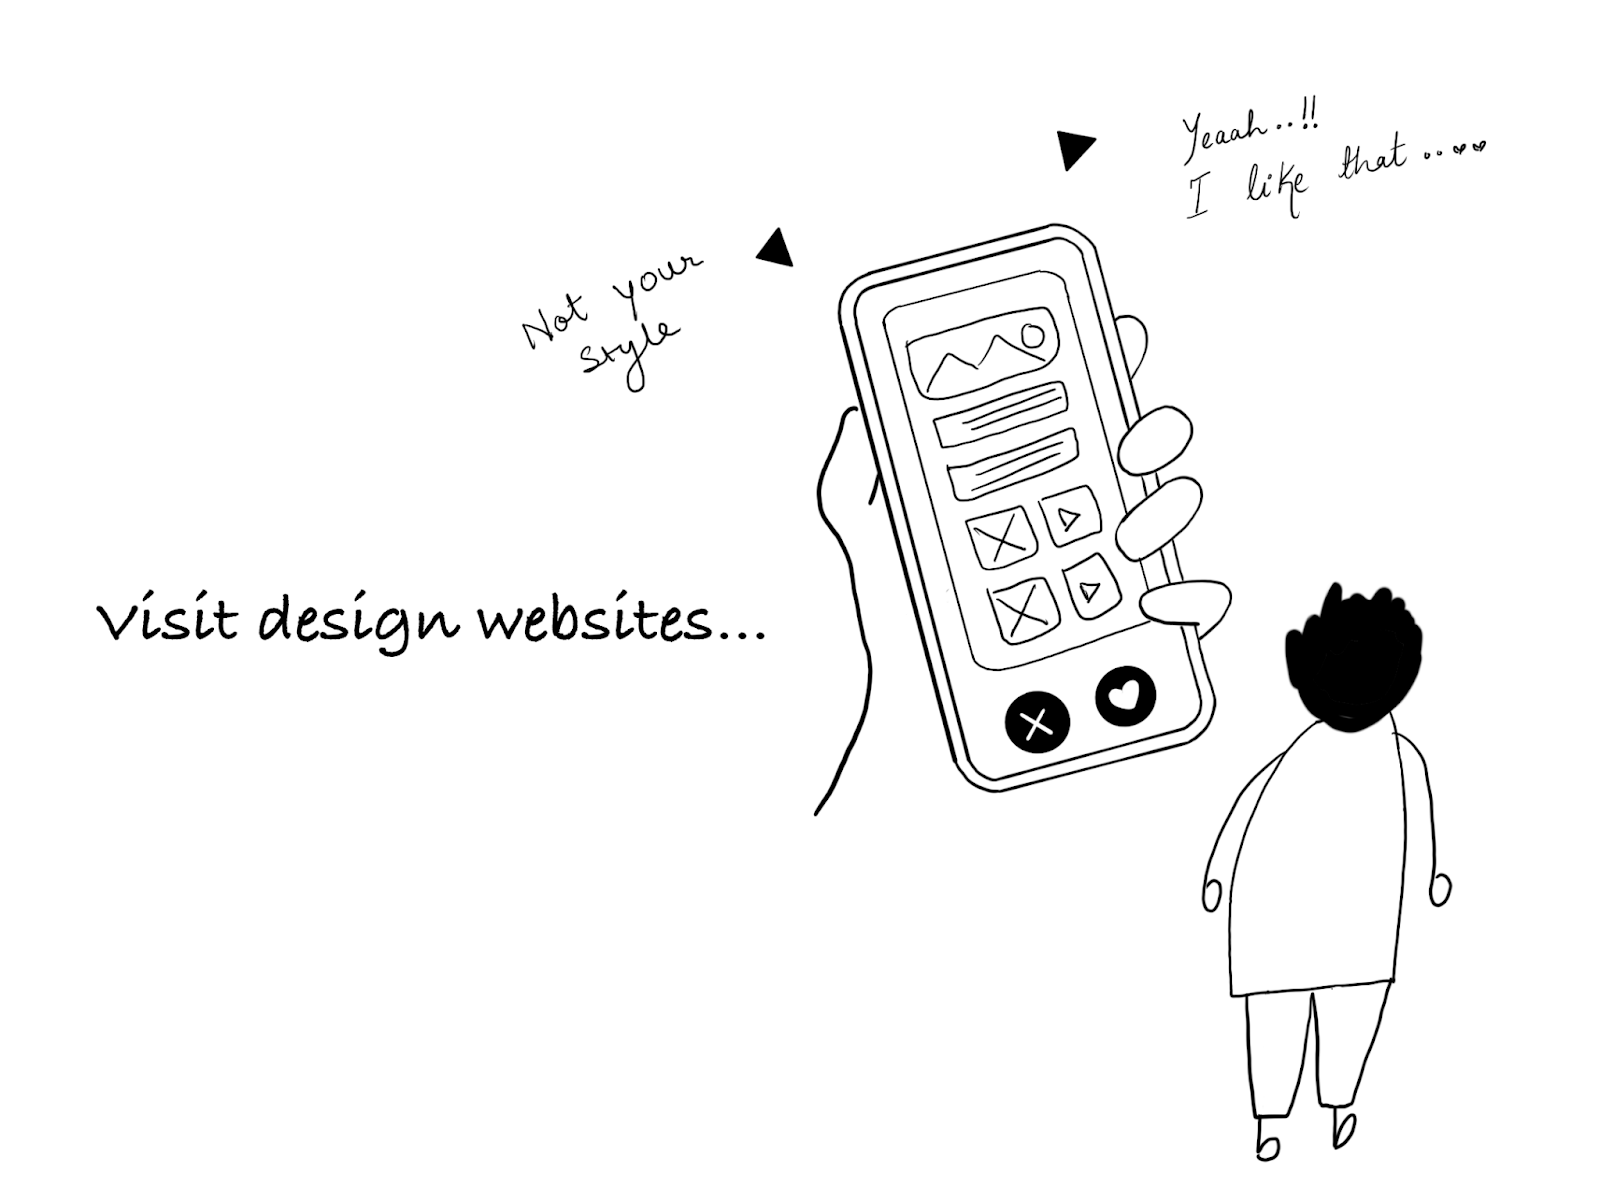 Відвідайте сайти дизайну